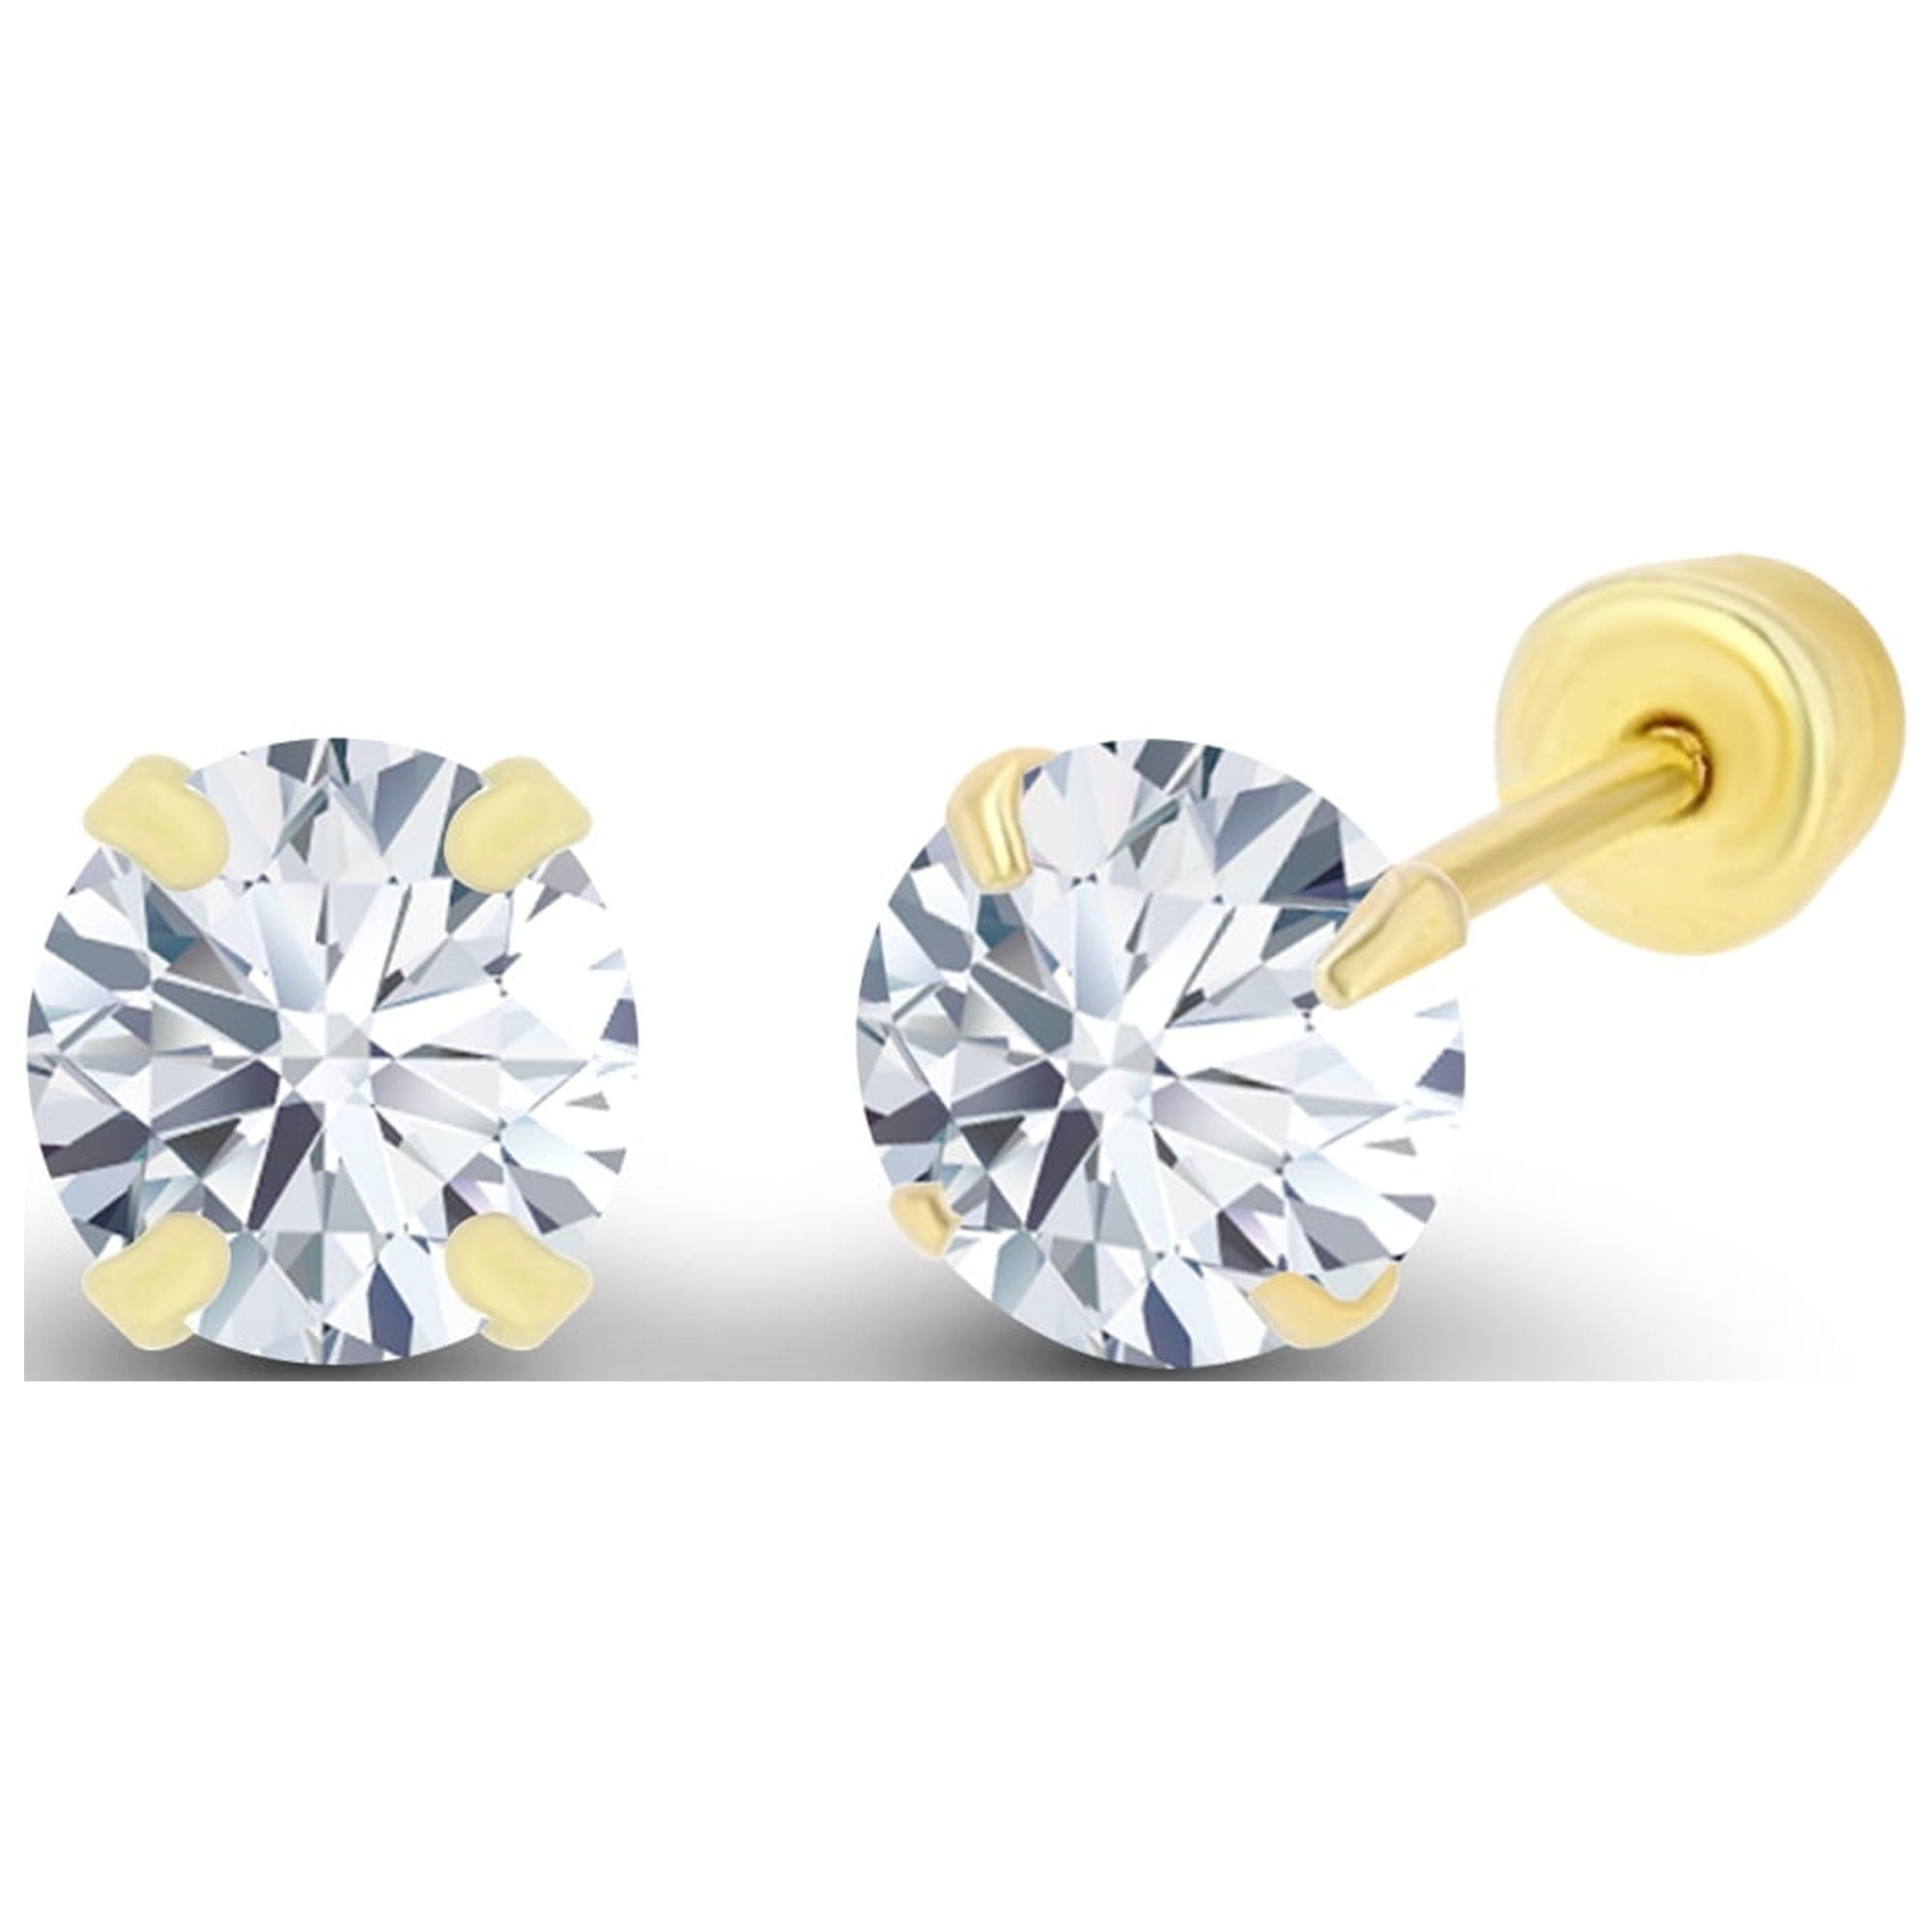 Diamond Stud Earrings. Tested 585 (14K) White Gold, Screw Backs